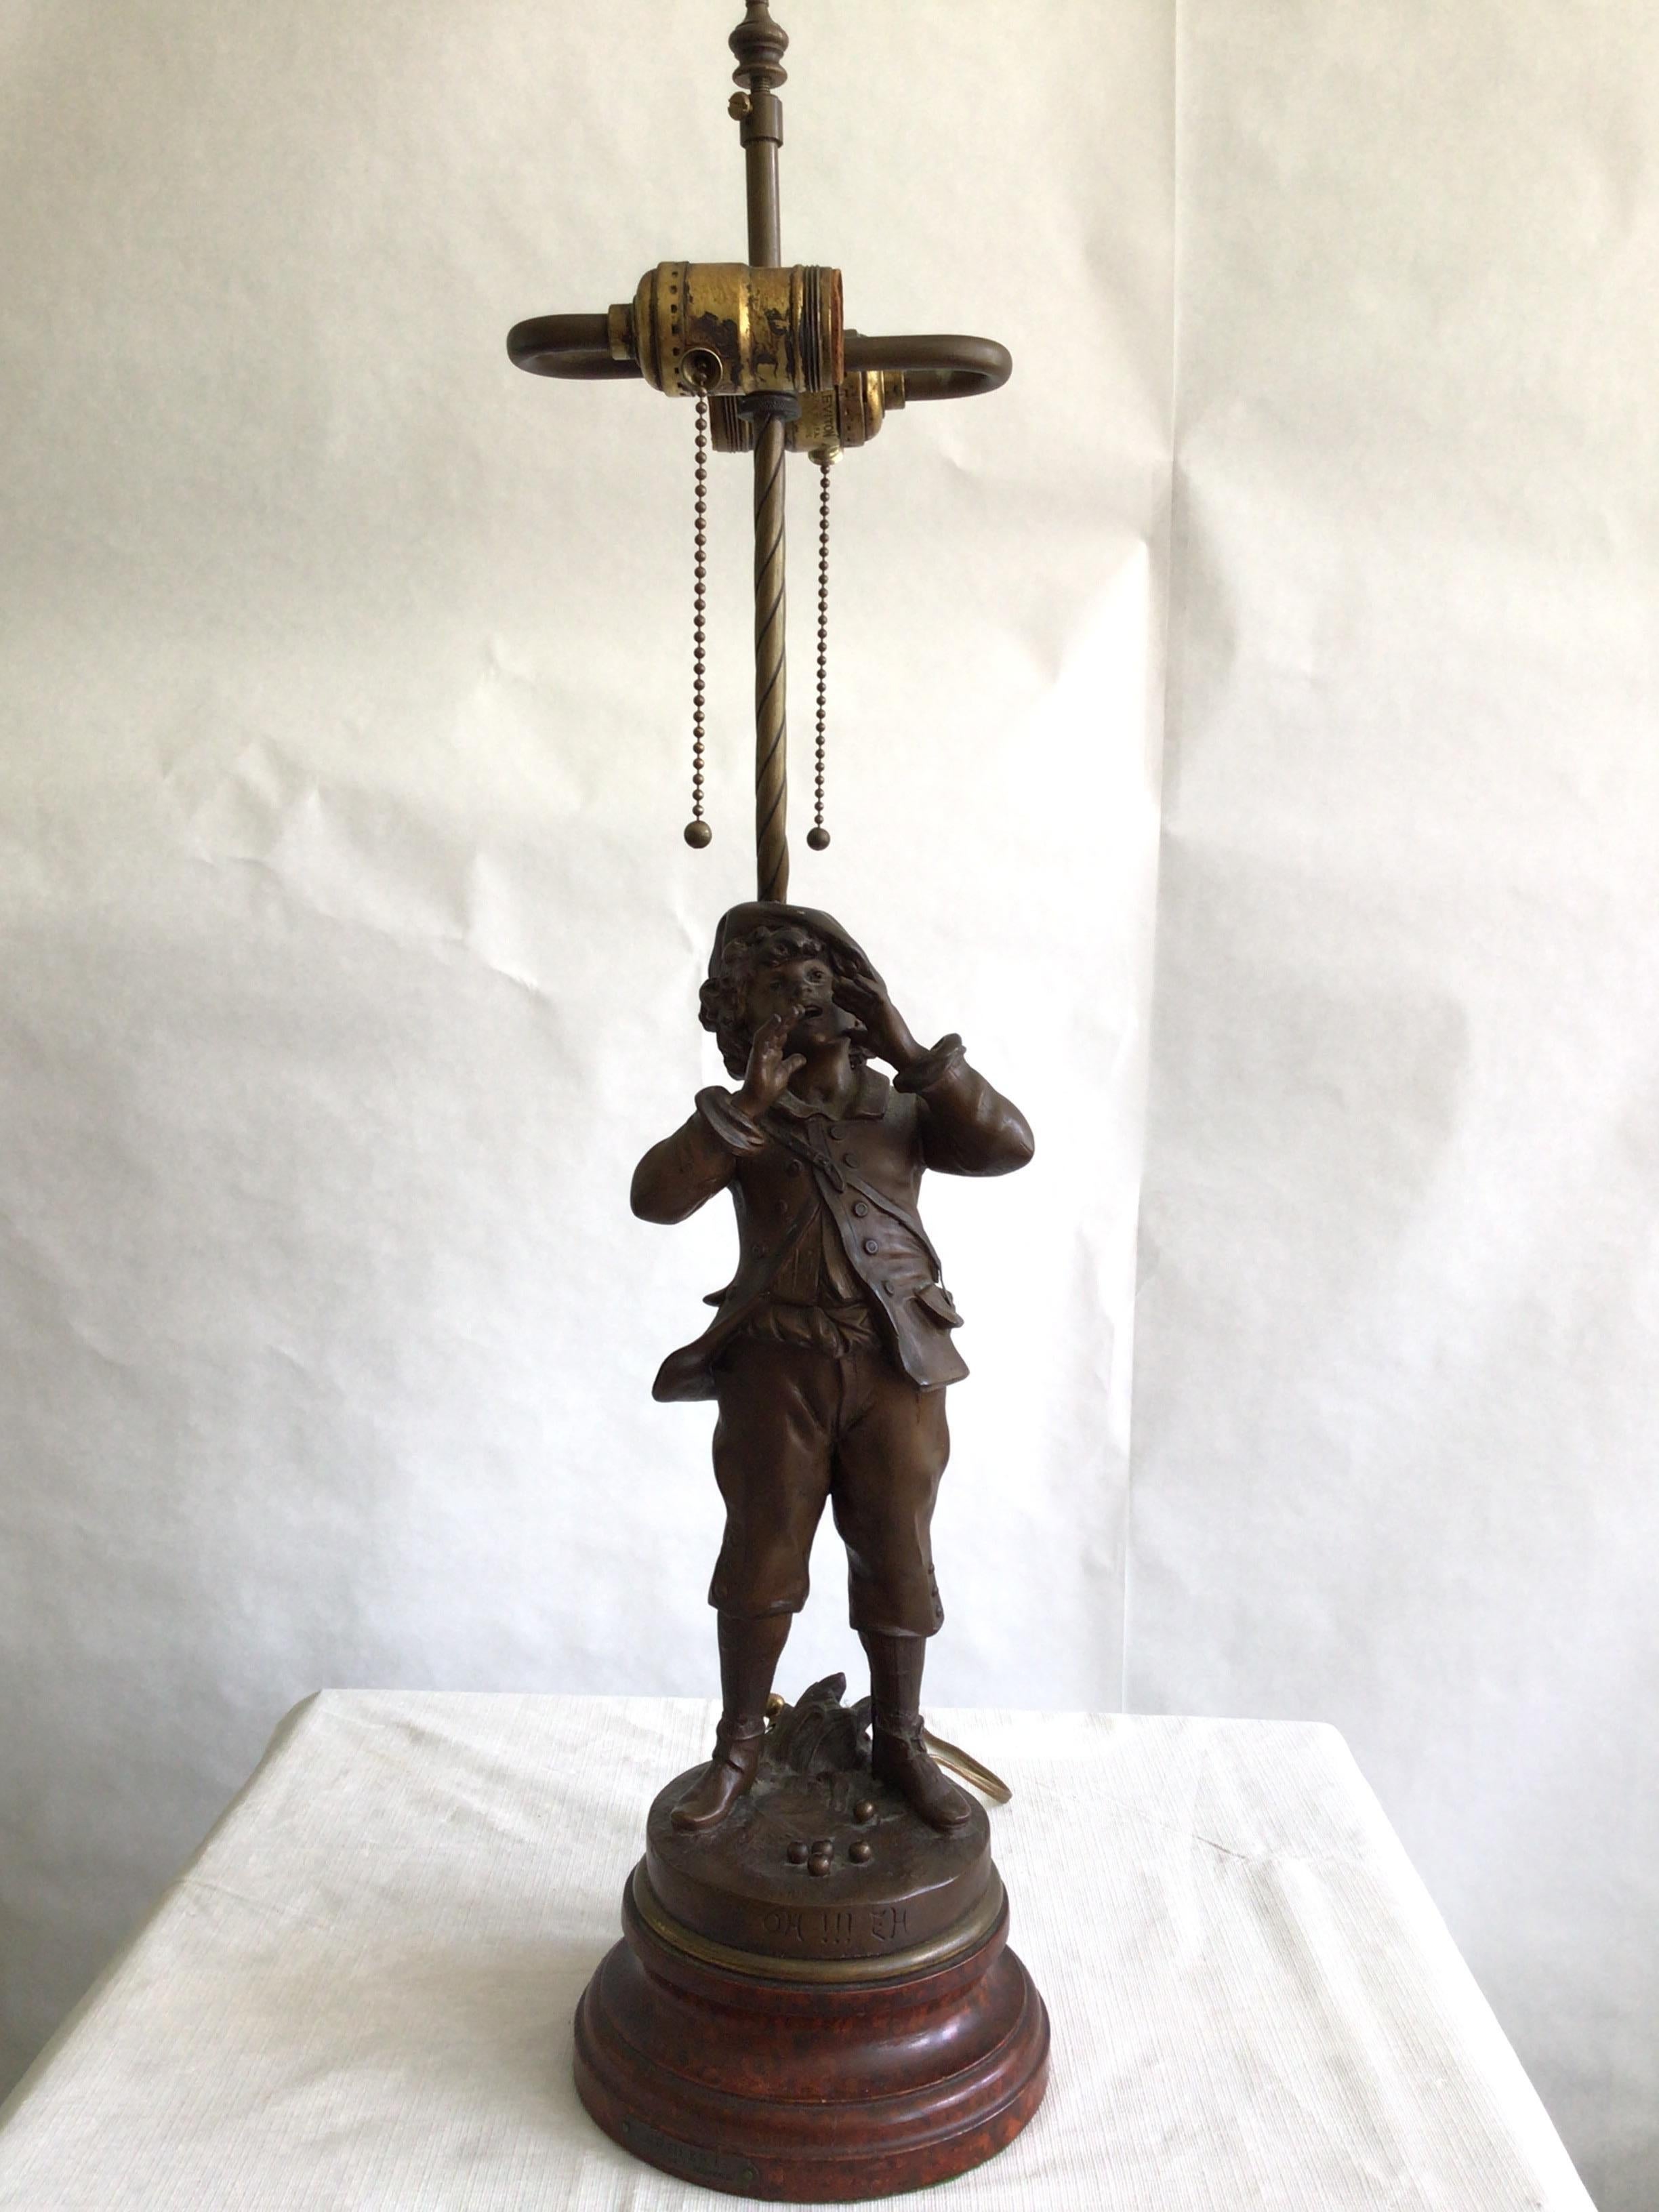 1950er Skulptur Tischlampe eines brüllenden Jungen
Hergestellt aus Zinn oder Topfmetall
Sockel aus lackiertem Holz mit Schildpattimitat
OH !!! EH! 
Par L. Moreau 
Höhe bis zur Oberkante der Steckdose
Muss neu verkabelt werden